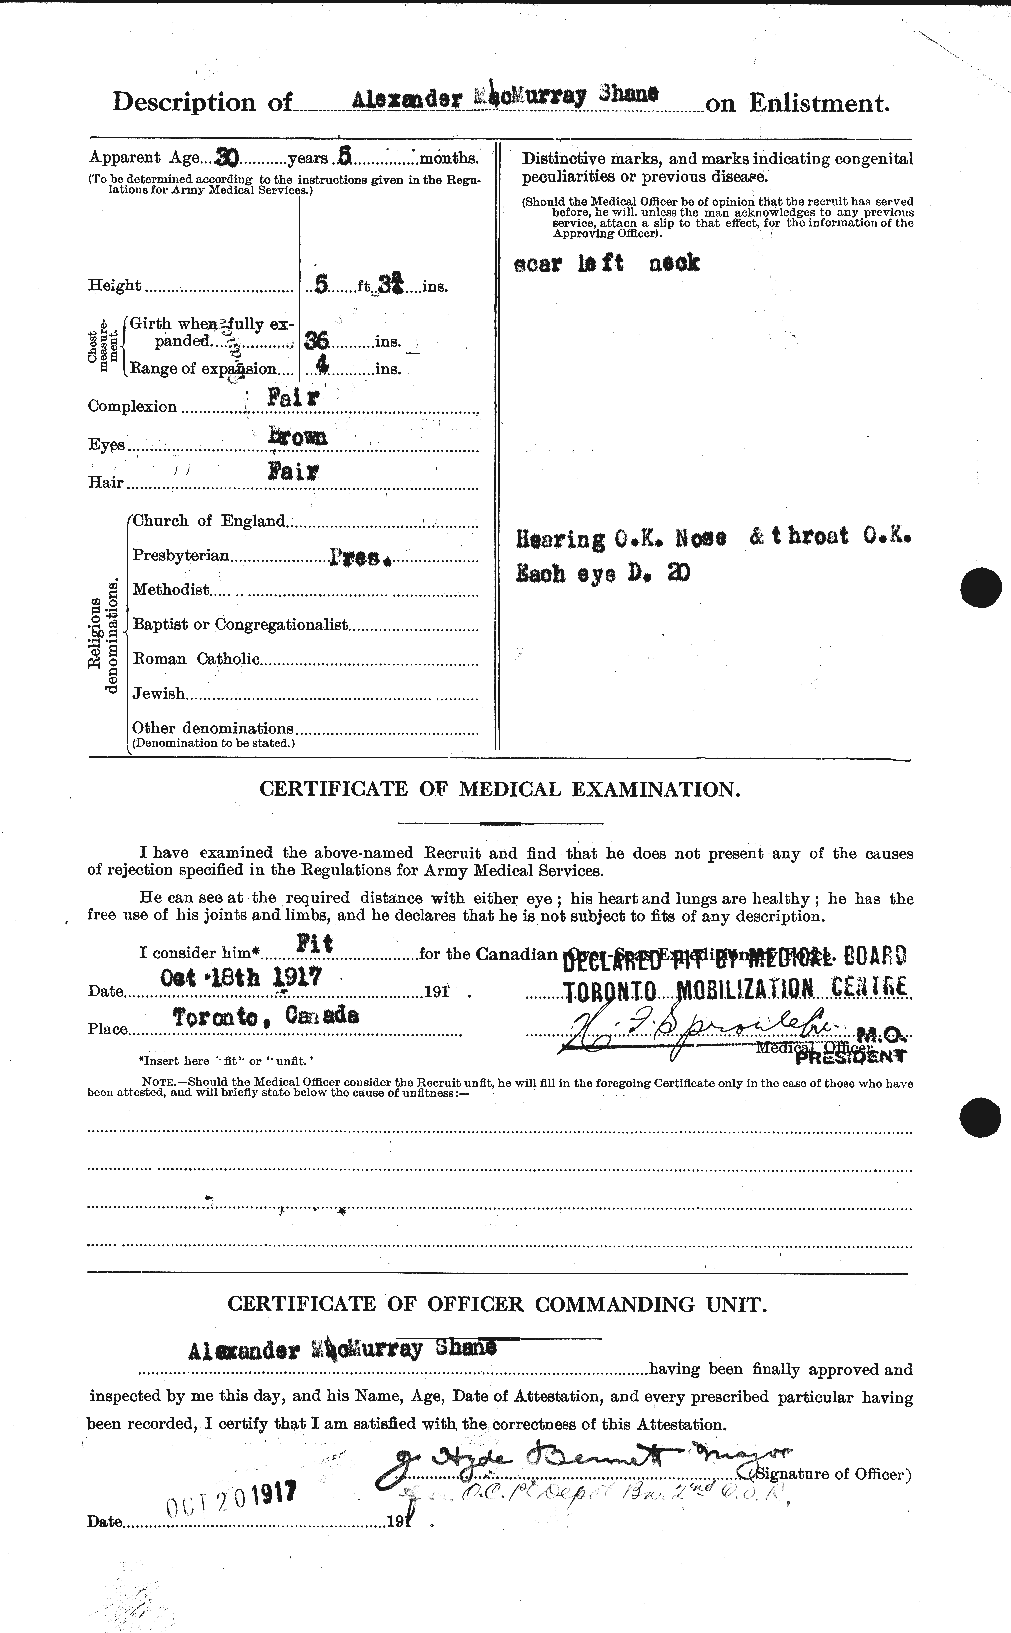 Dossiers du Personnel de la Première Guerre mondiale - CEC 084136b